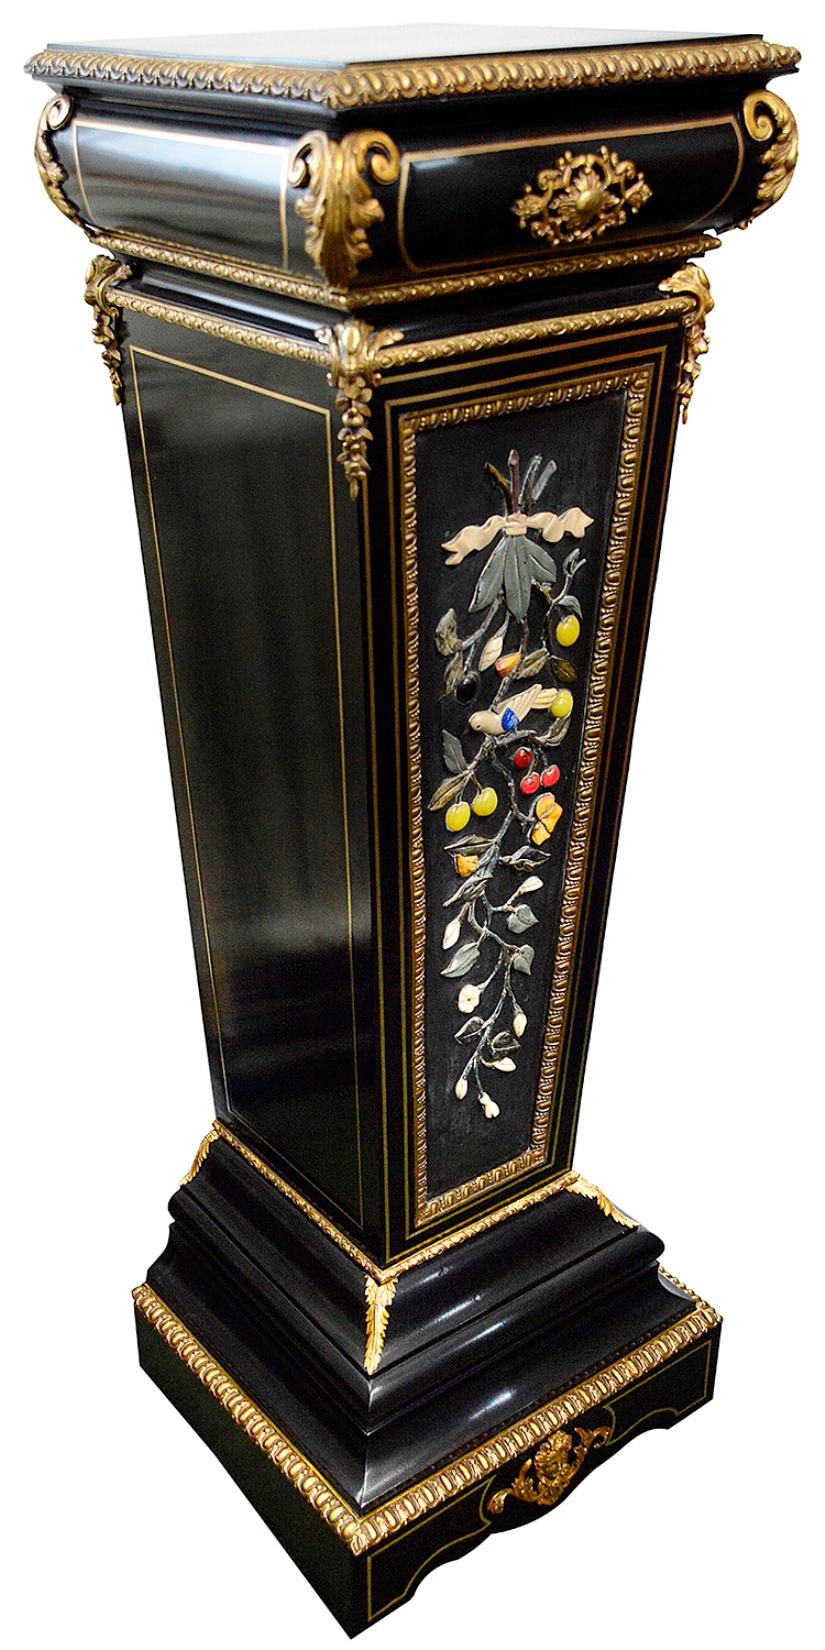 Eine sehr beeindruckende und gute Qualität 19. Jahrhundert Französisch ebonisiert Pietra dura eingelegt Sockel mit wunderbaren vergoldeten Ormolu scrolling blattförmigen Beschläge, Messing Bespannung. Die zentrale Tafel ist mit geschnitzten